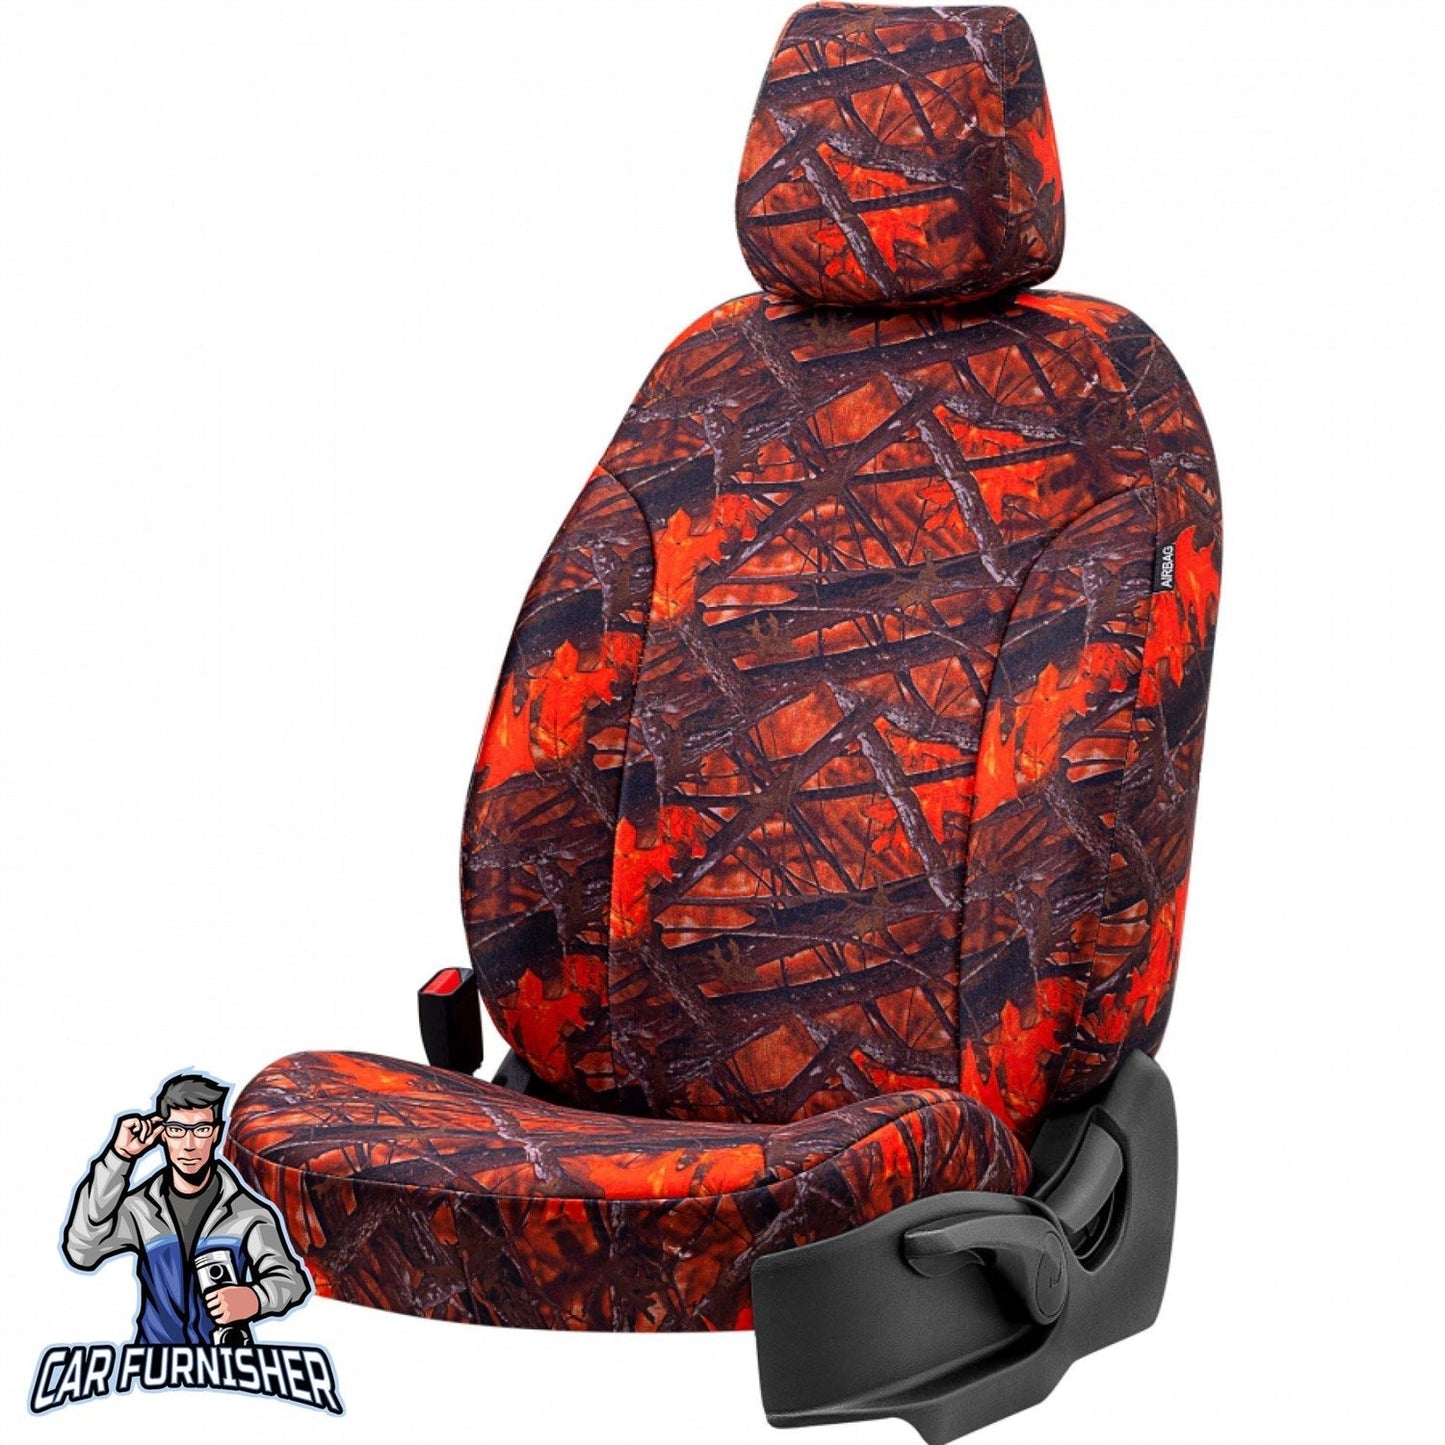 Skoda Yeti Seat Covers Camouflage Waterproof Design Sahara Camo Waterproof Fabric